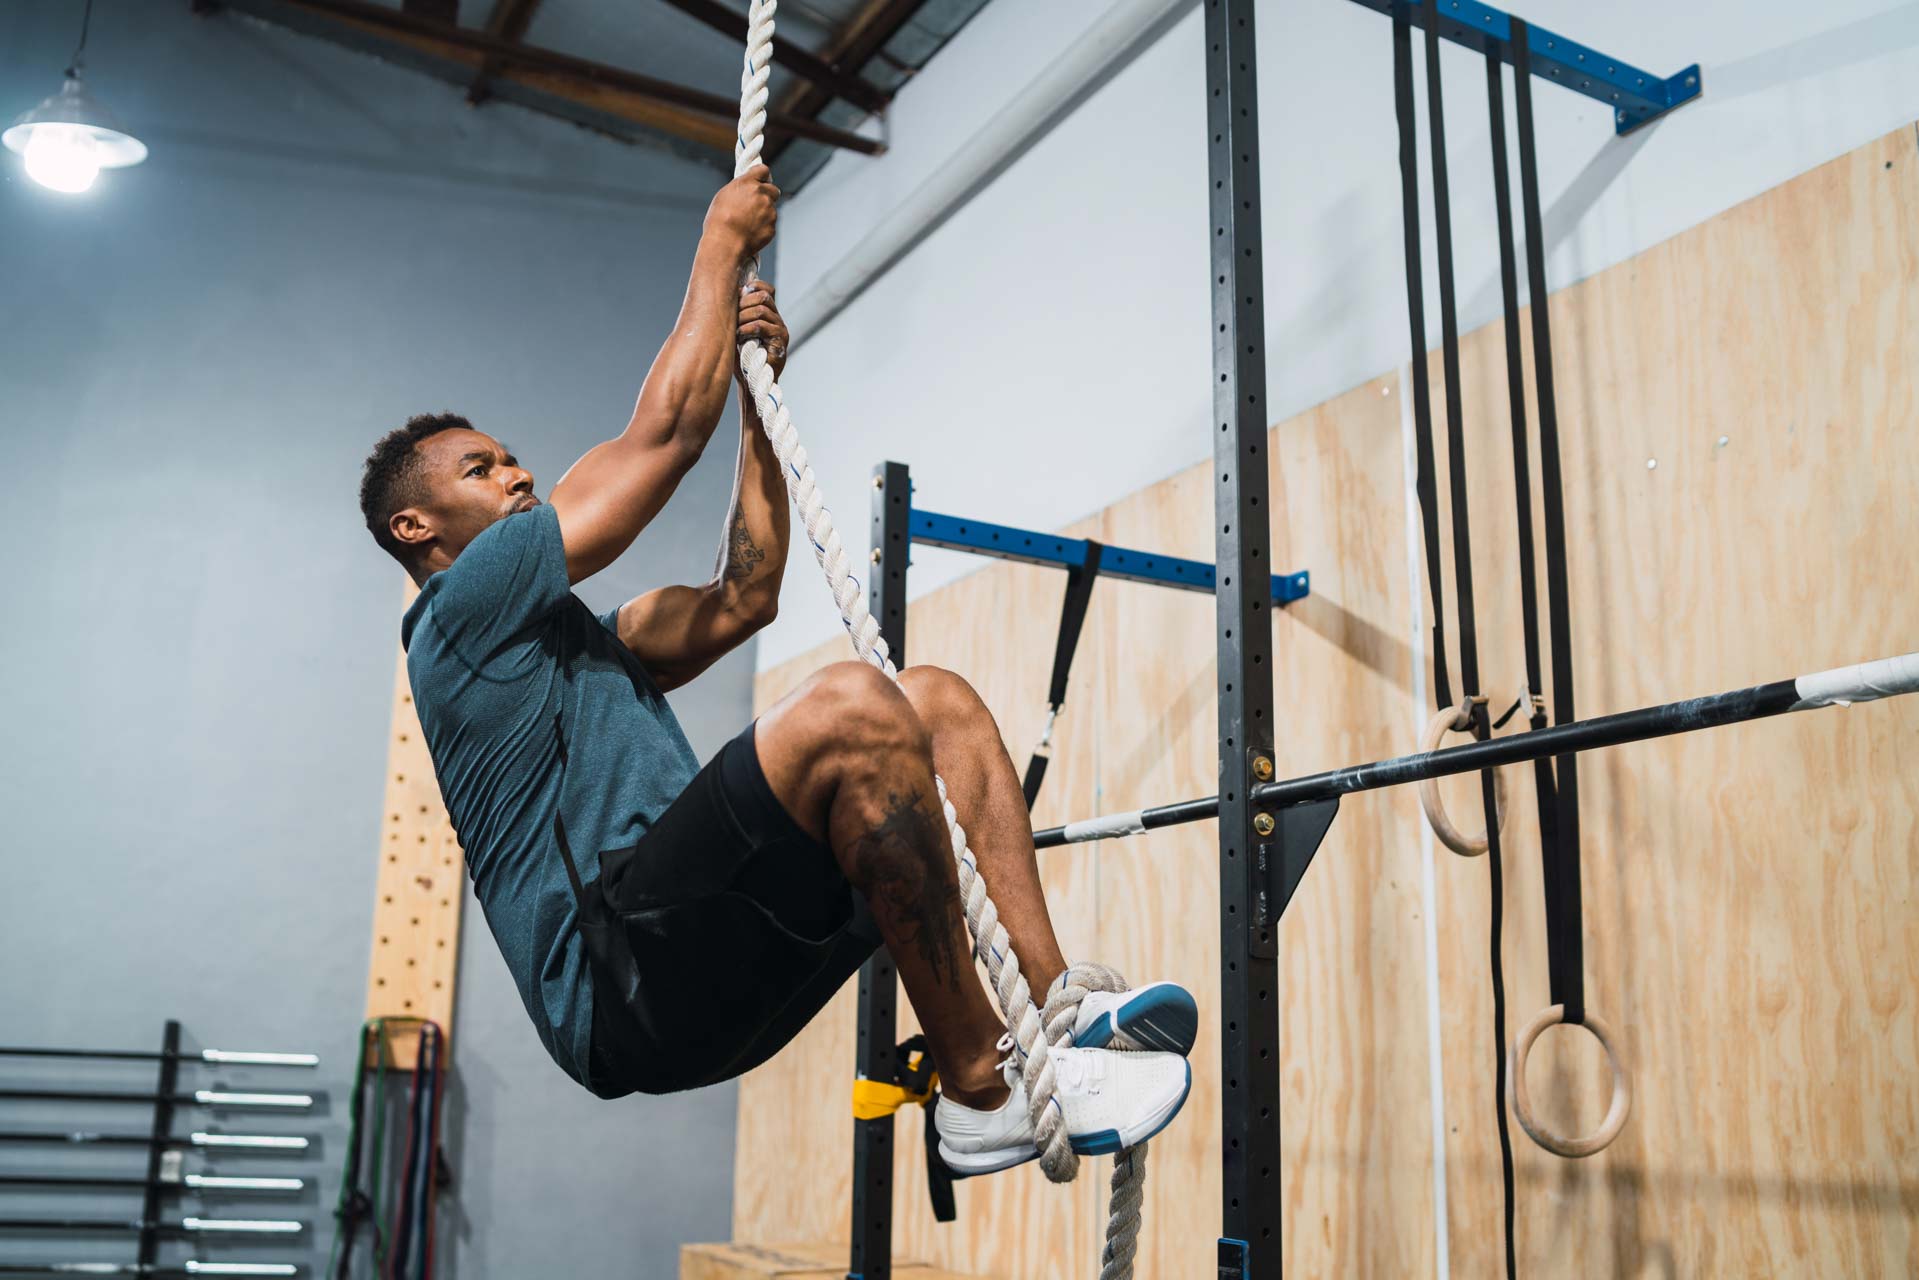 Exercice de sport : comment se muscler efficacement avec une corde